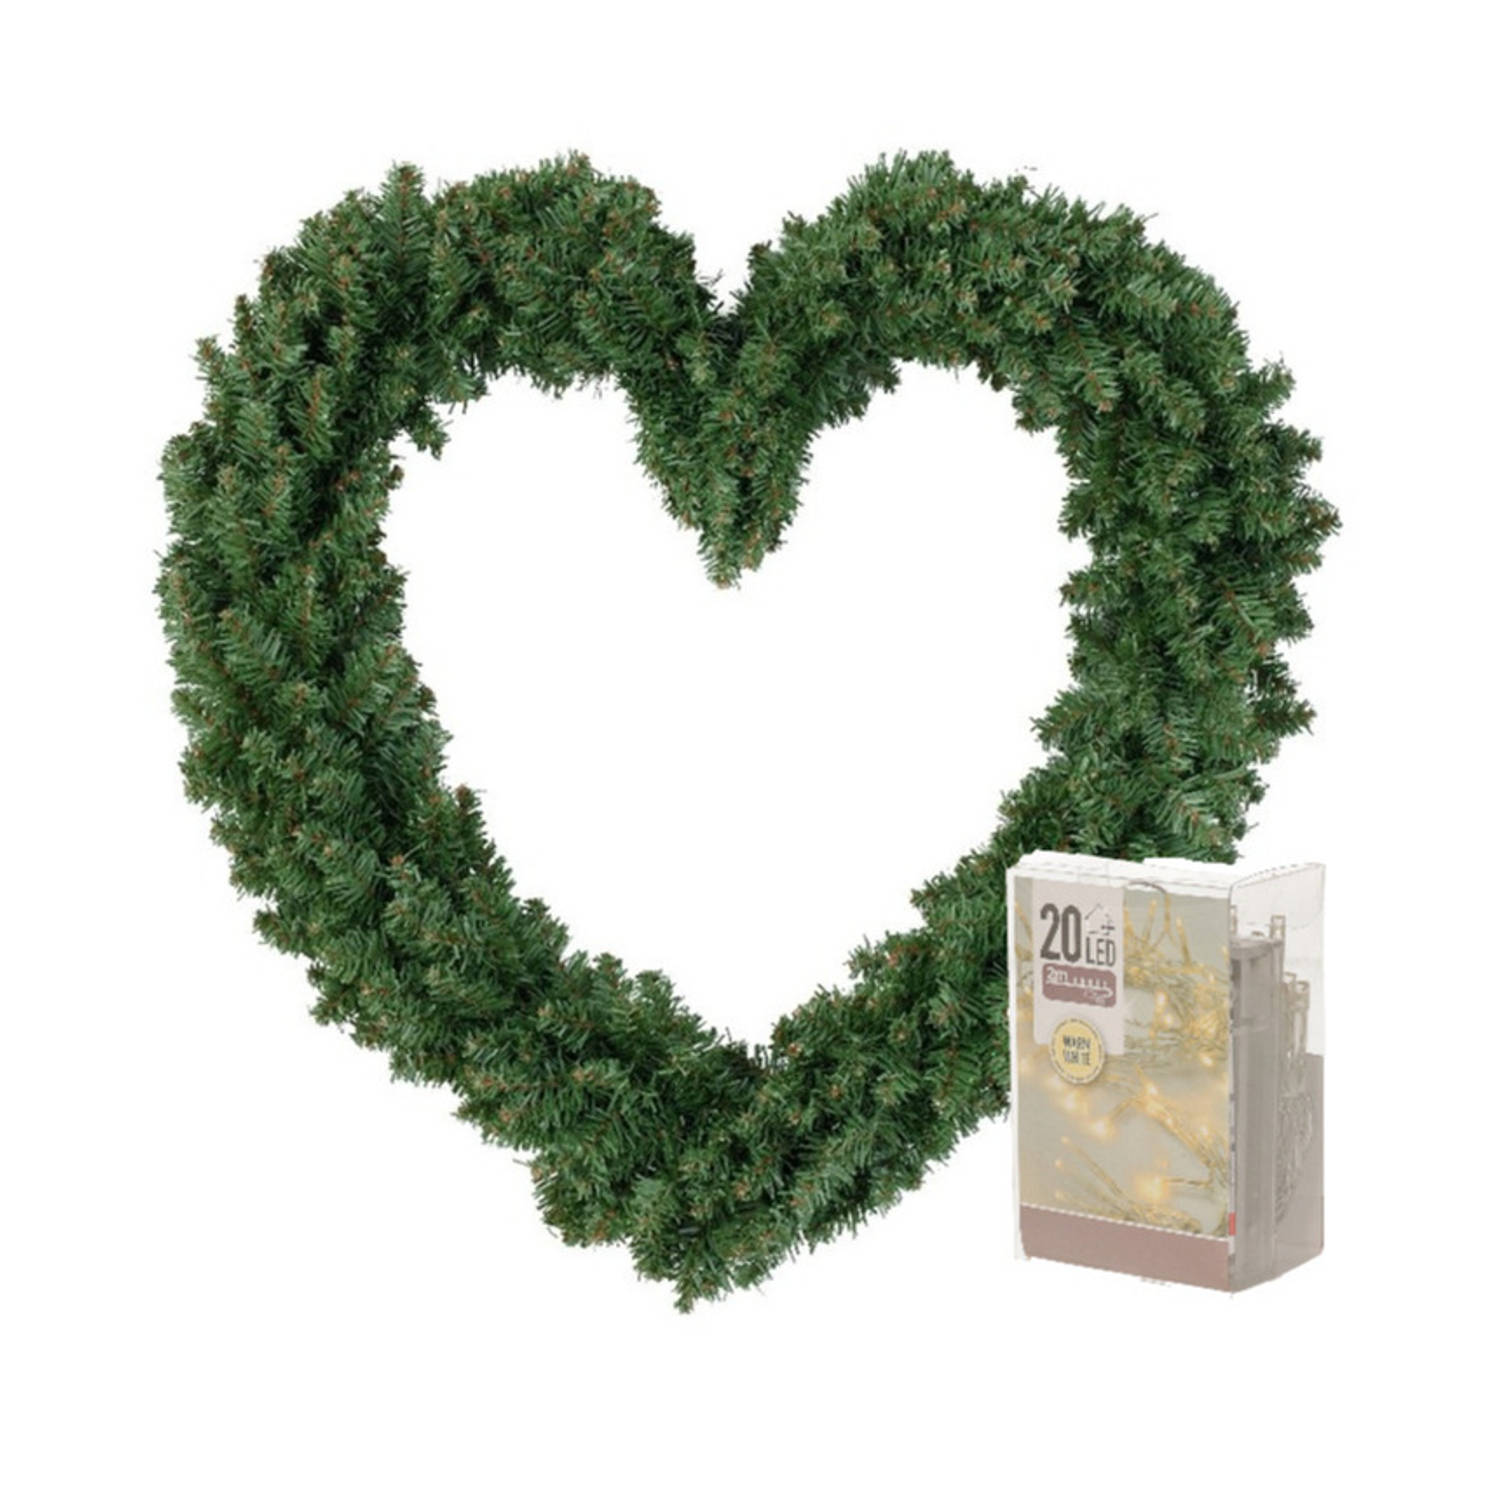 Kerstversiering kerstkrans hart groen 50 cm inclusief verlichting Kerstkransen